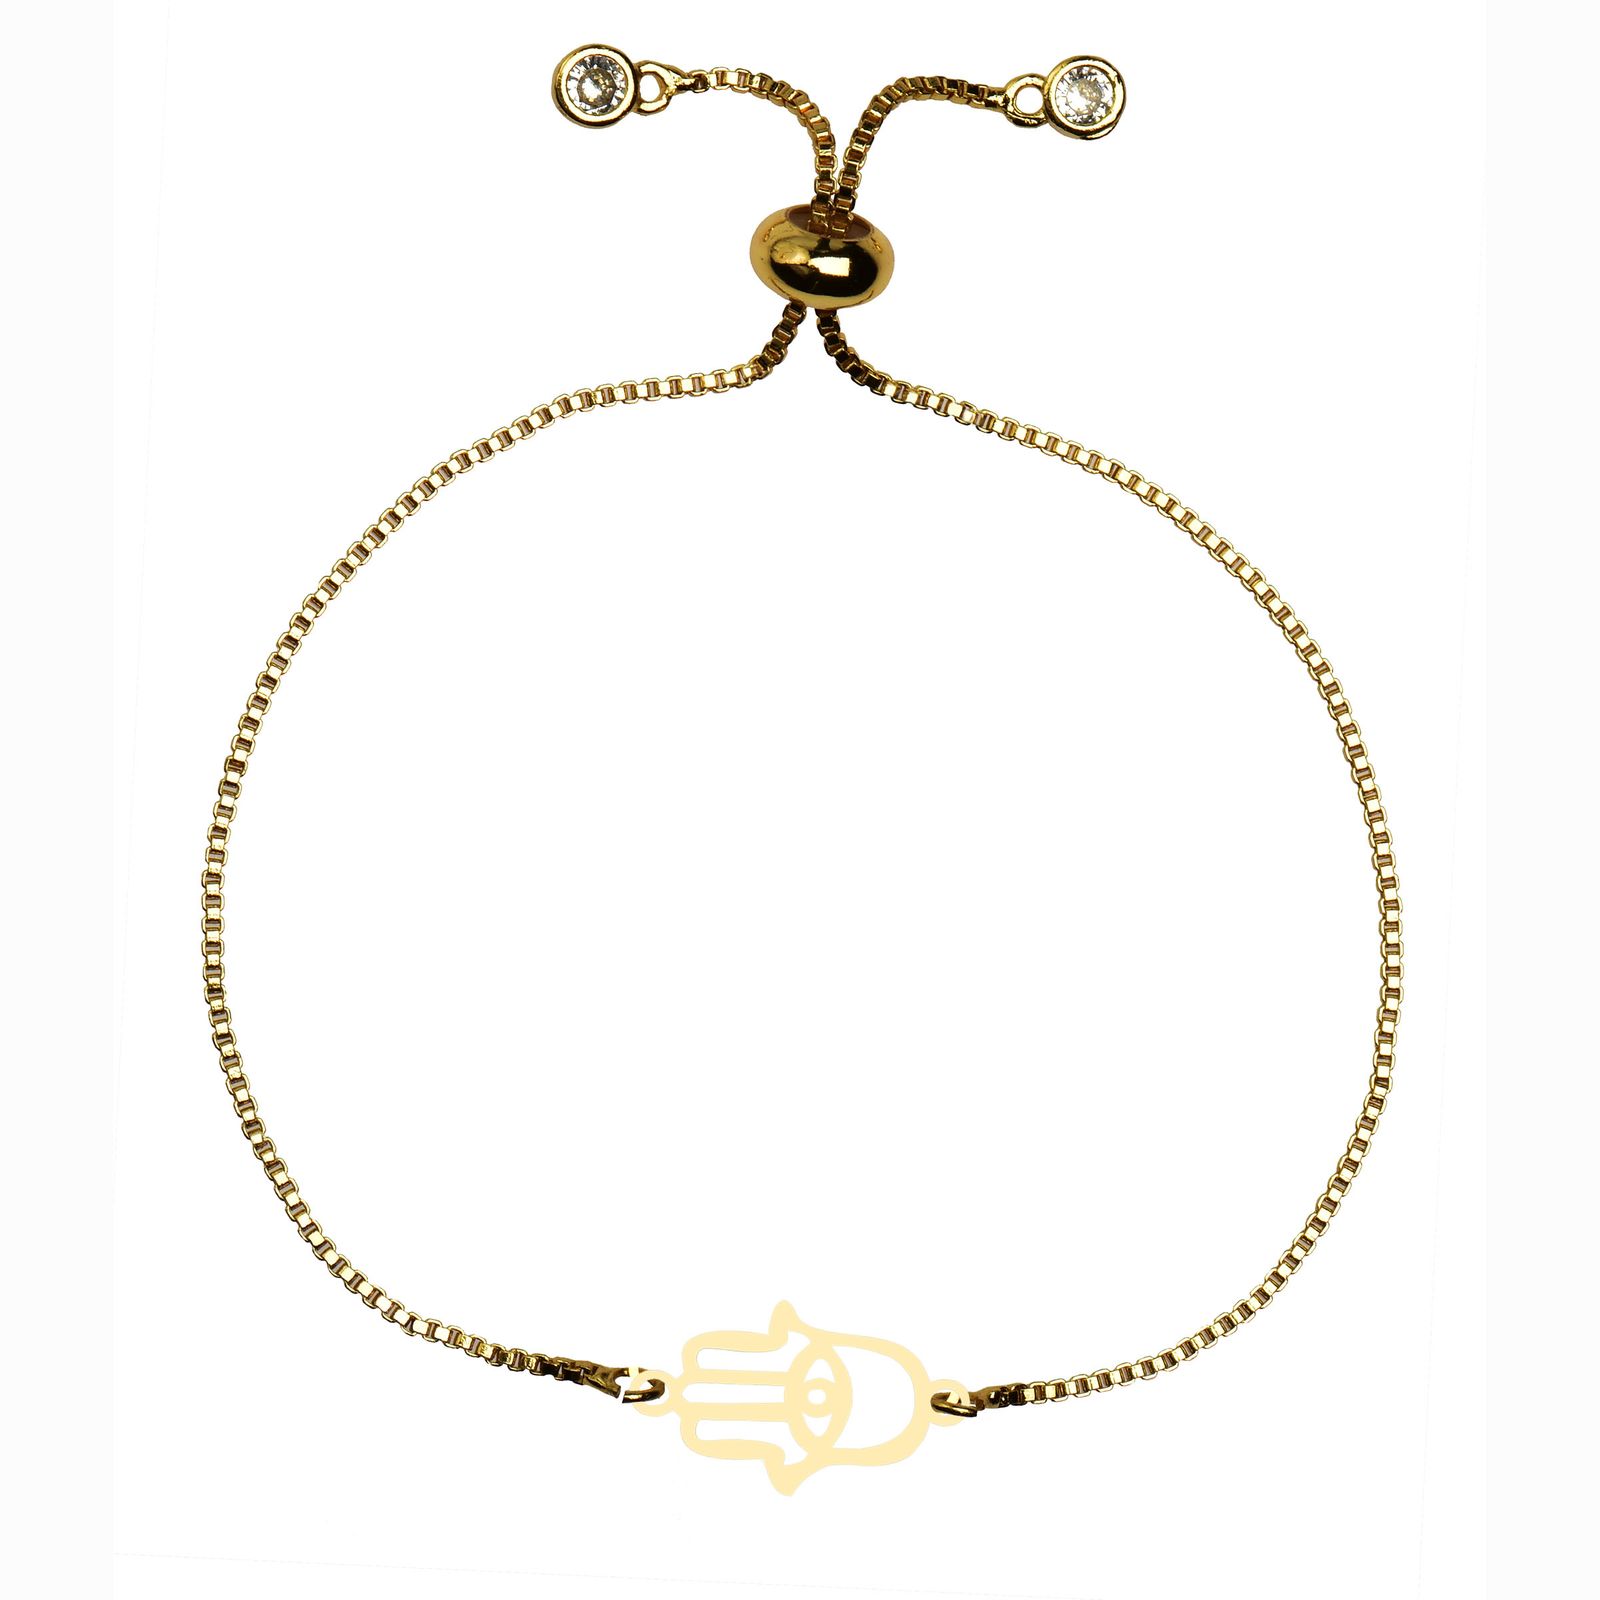 دستبند طلا 18 عیار زنانه کرابو طرح دست همسا مدل Kr102236 -  - 2